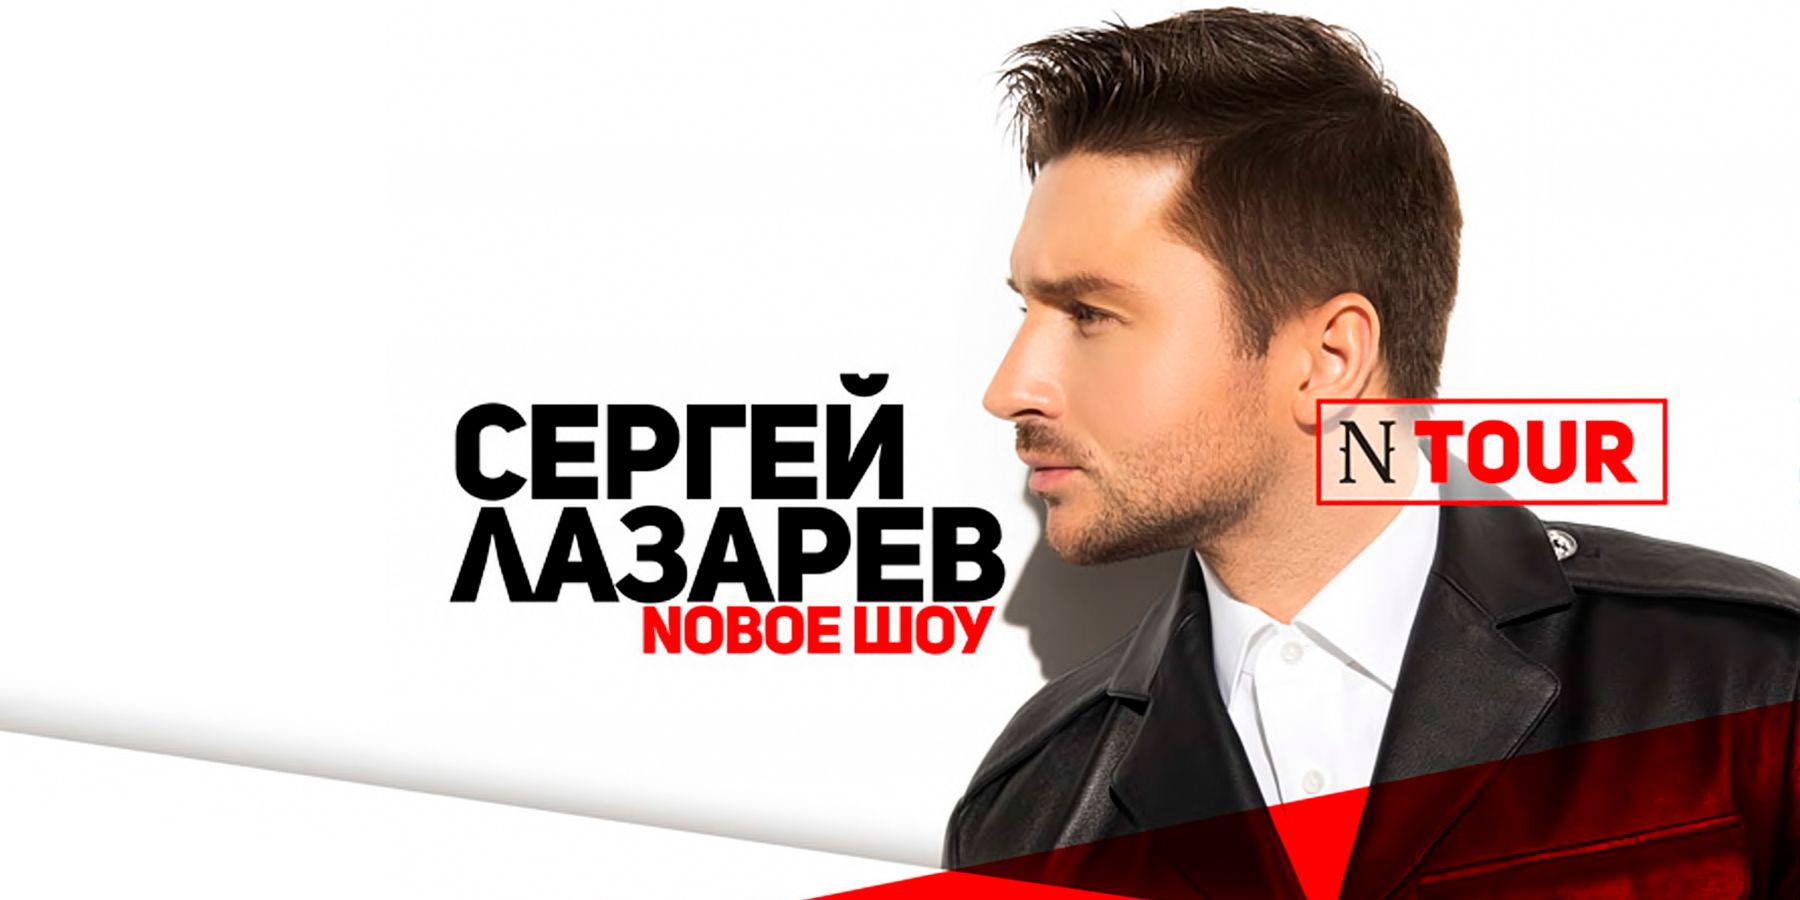 Сергей Лазарев с новым шоу «N TOUR».